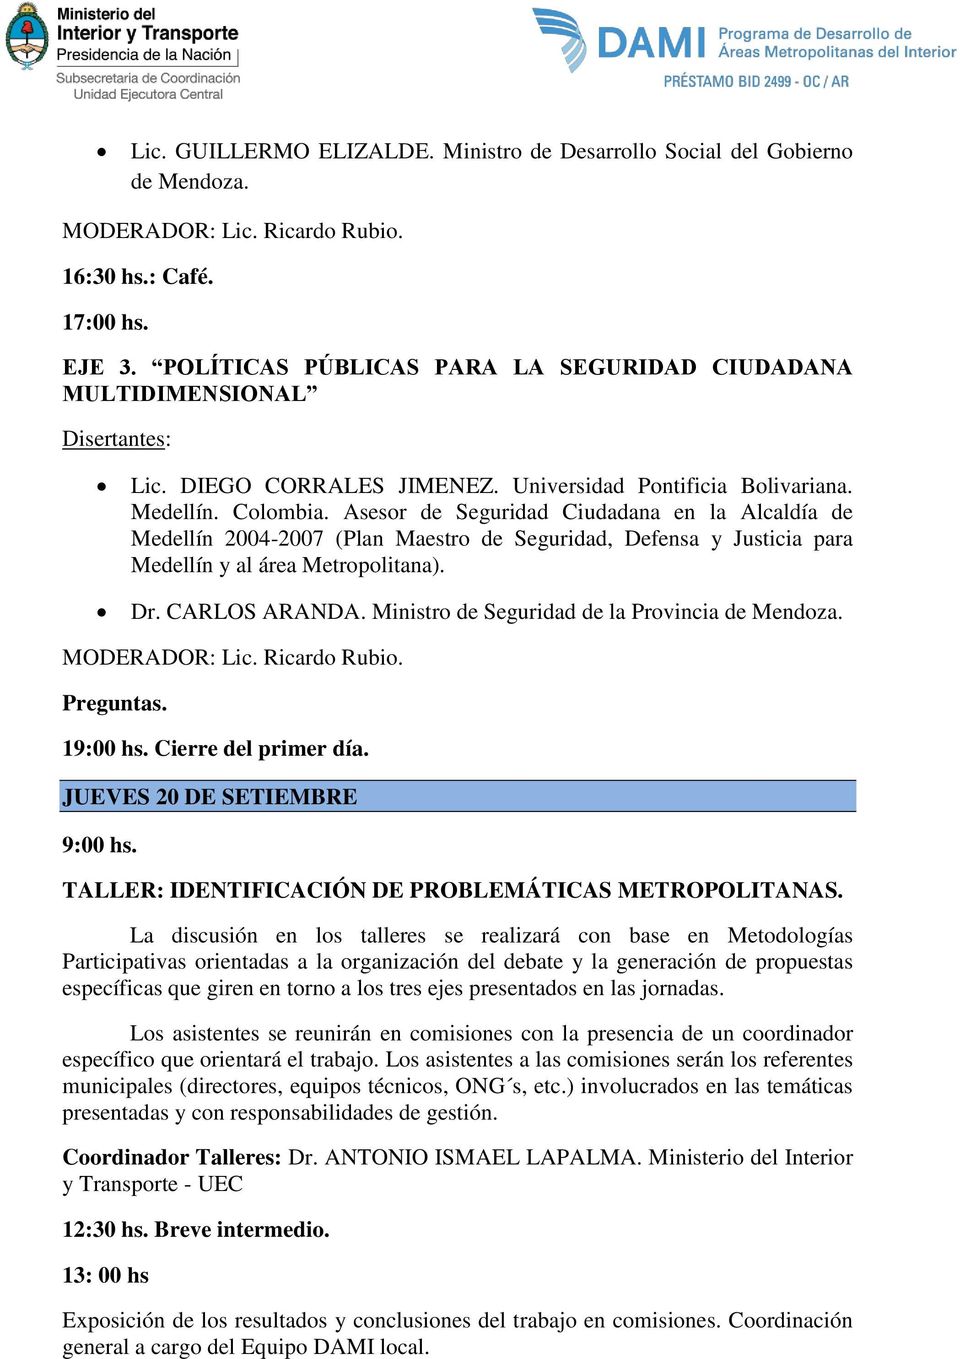 Asesor de Seguridad Ciudadana en la Alcaldía de Medellín 2004-2007 (Plan Maestro de Seguridad, Defensa y Justicia para Medellín y al área Metropolitana). Dr. CARLOS ARANDA.